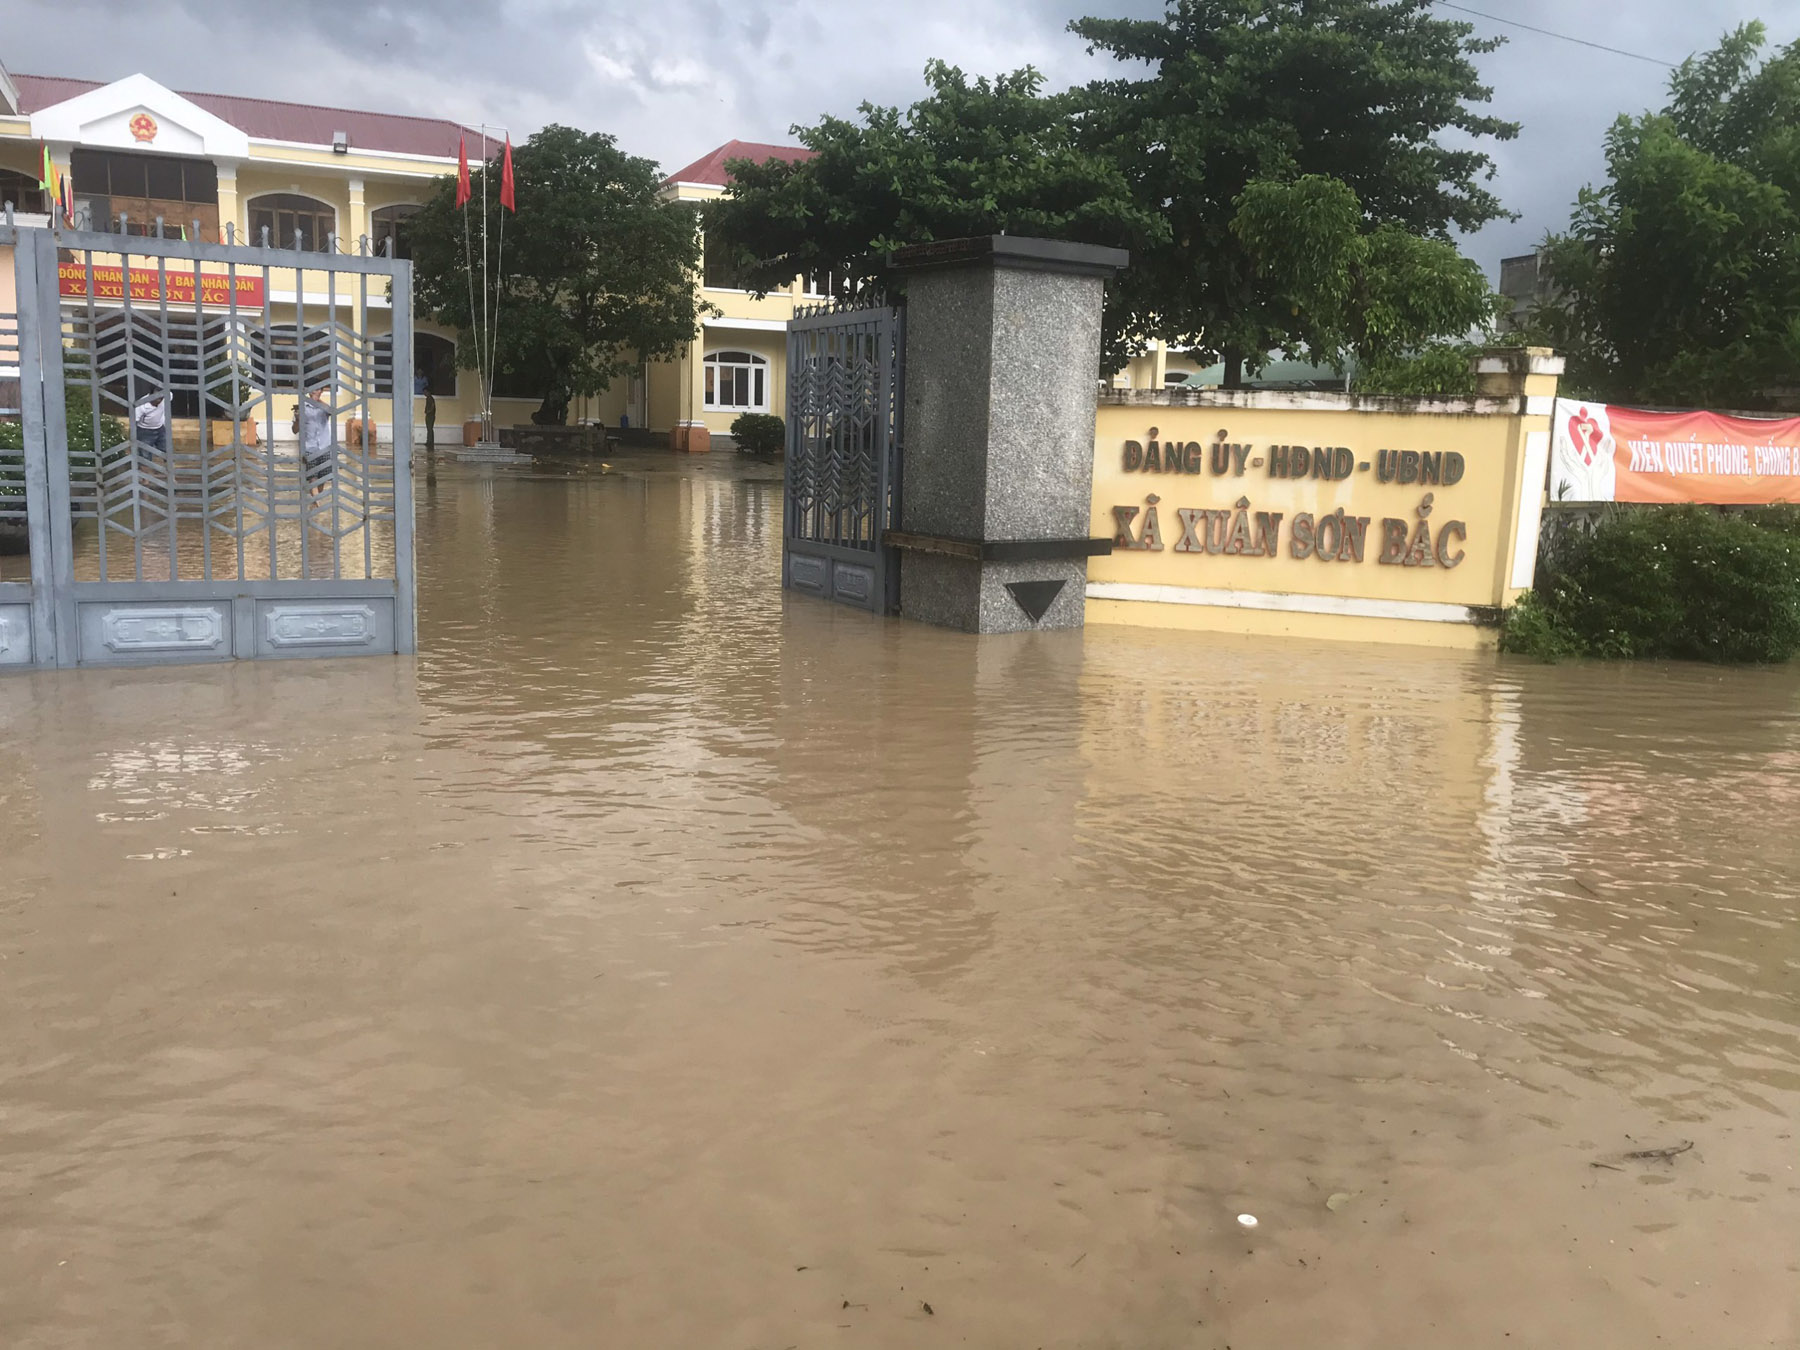 UBND xã Xuân Sơn Bắc bị ngập trong nước lũ